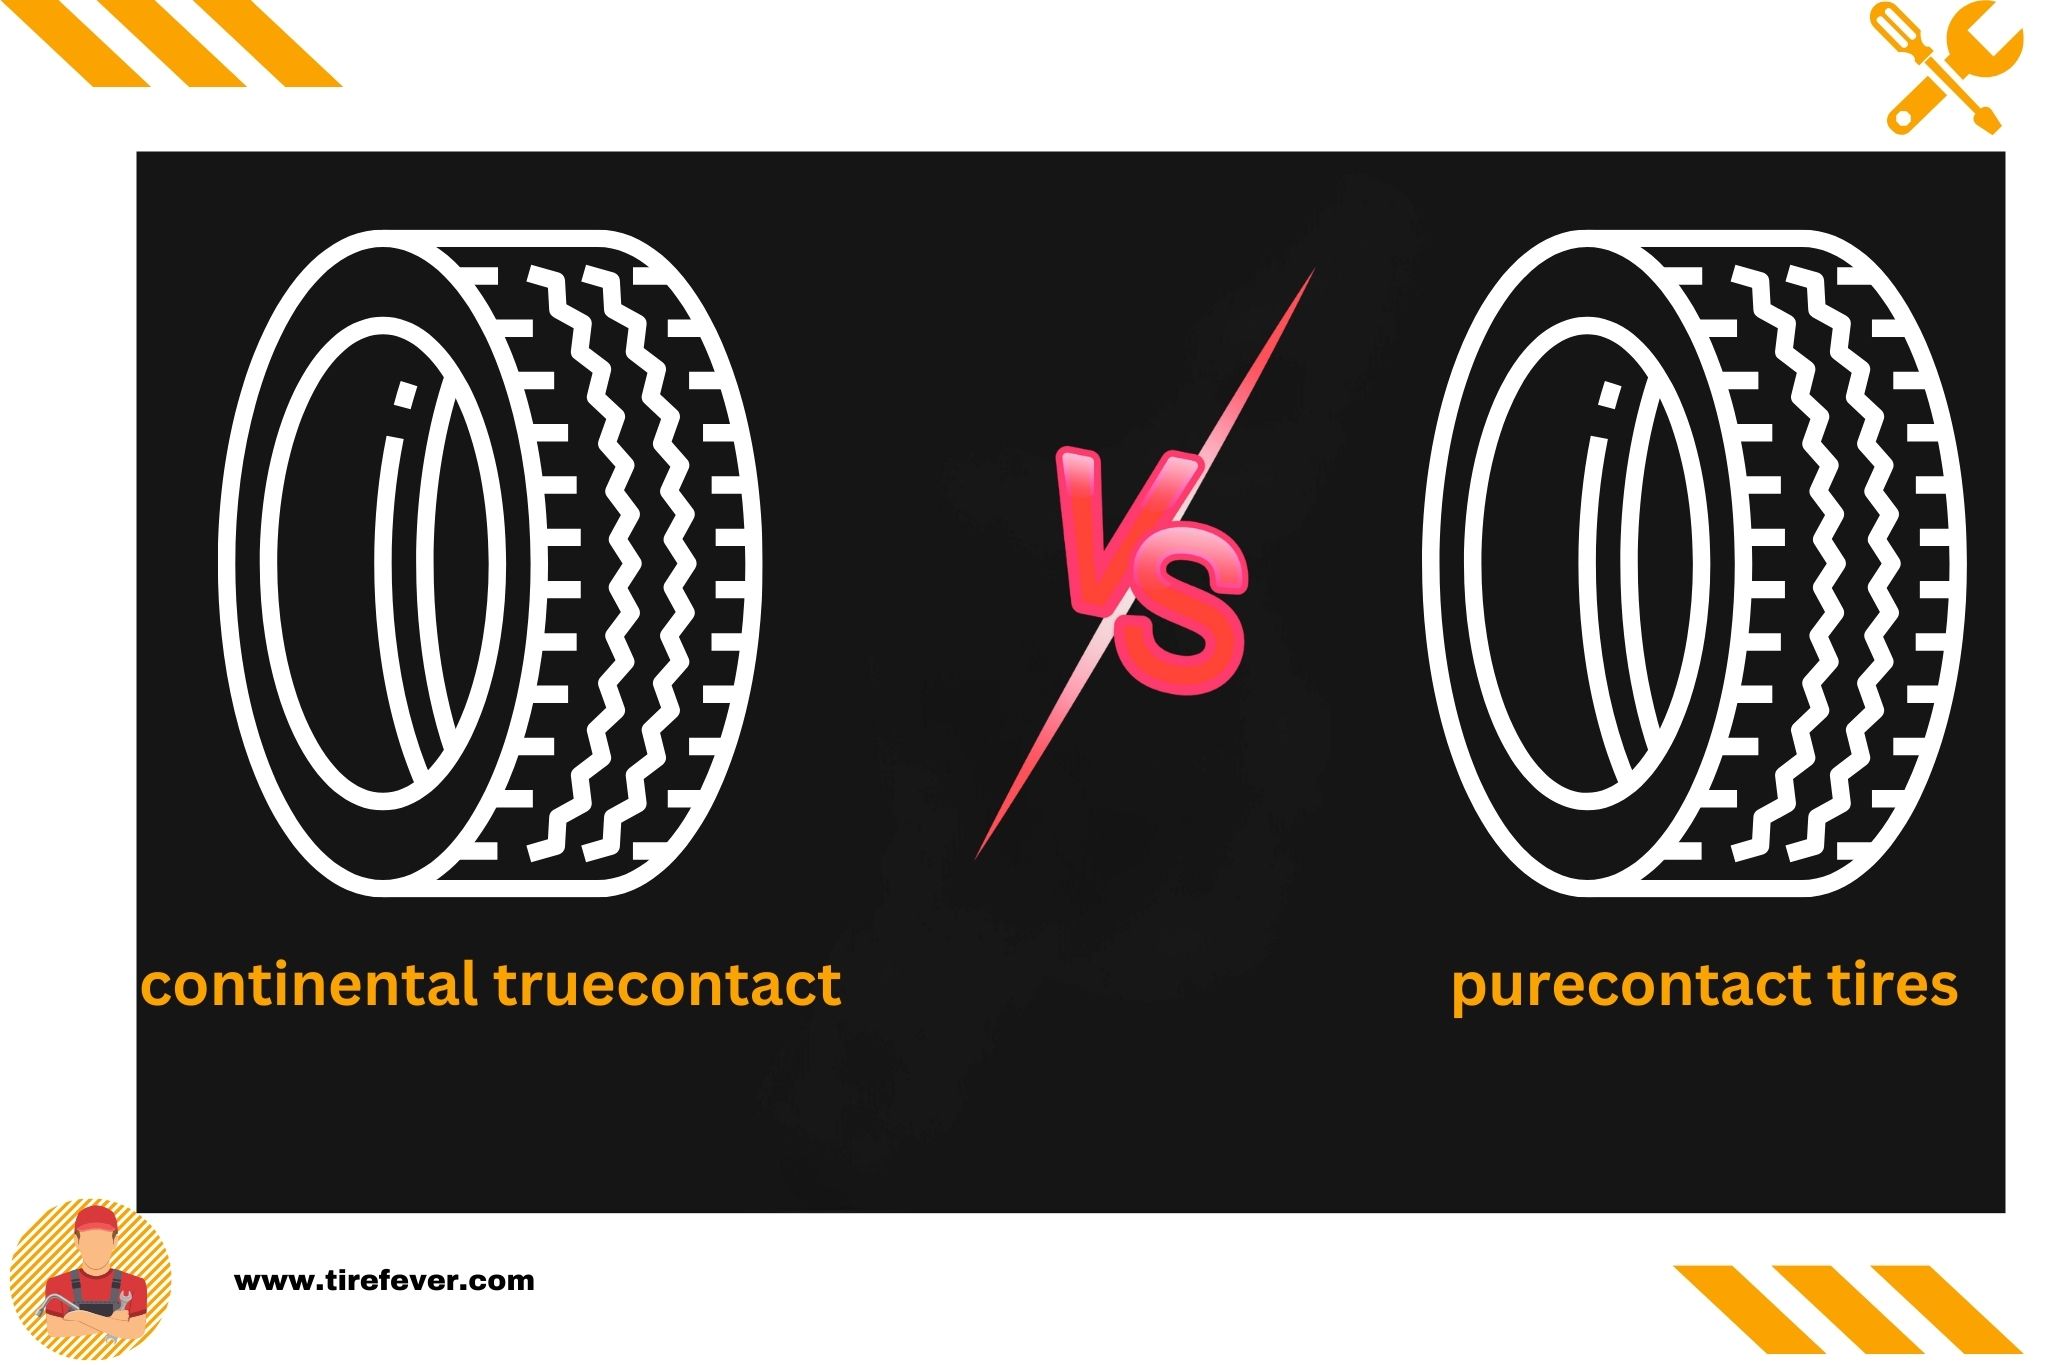 continental truecontact vs purecontact tires